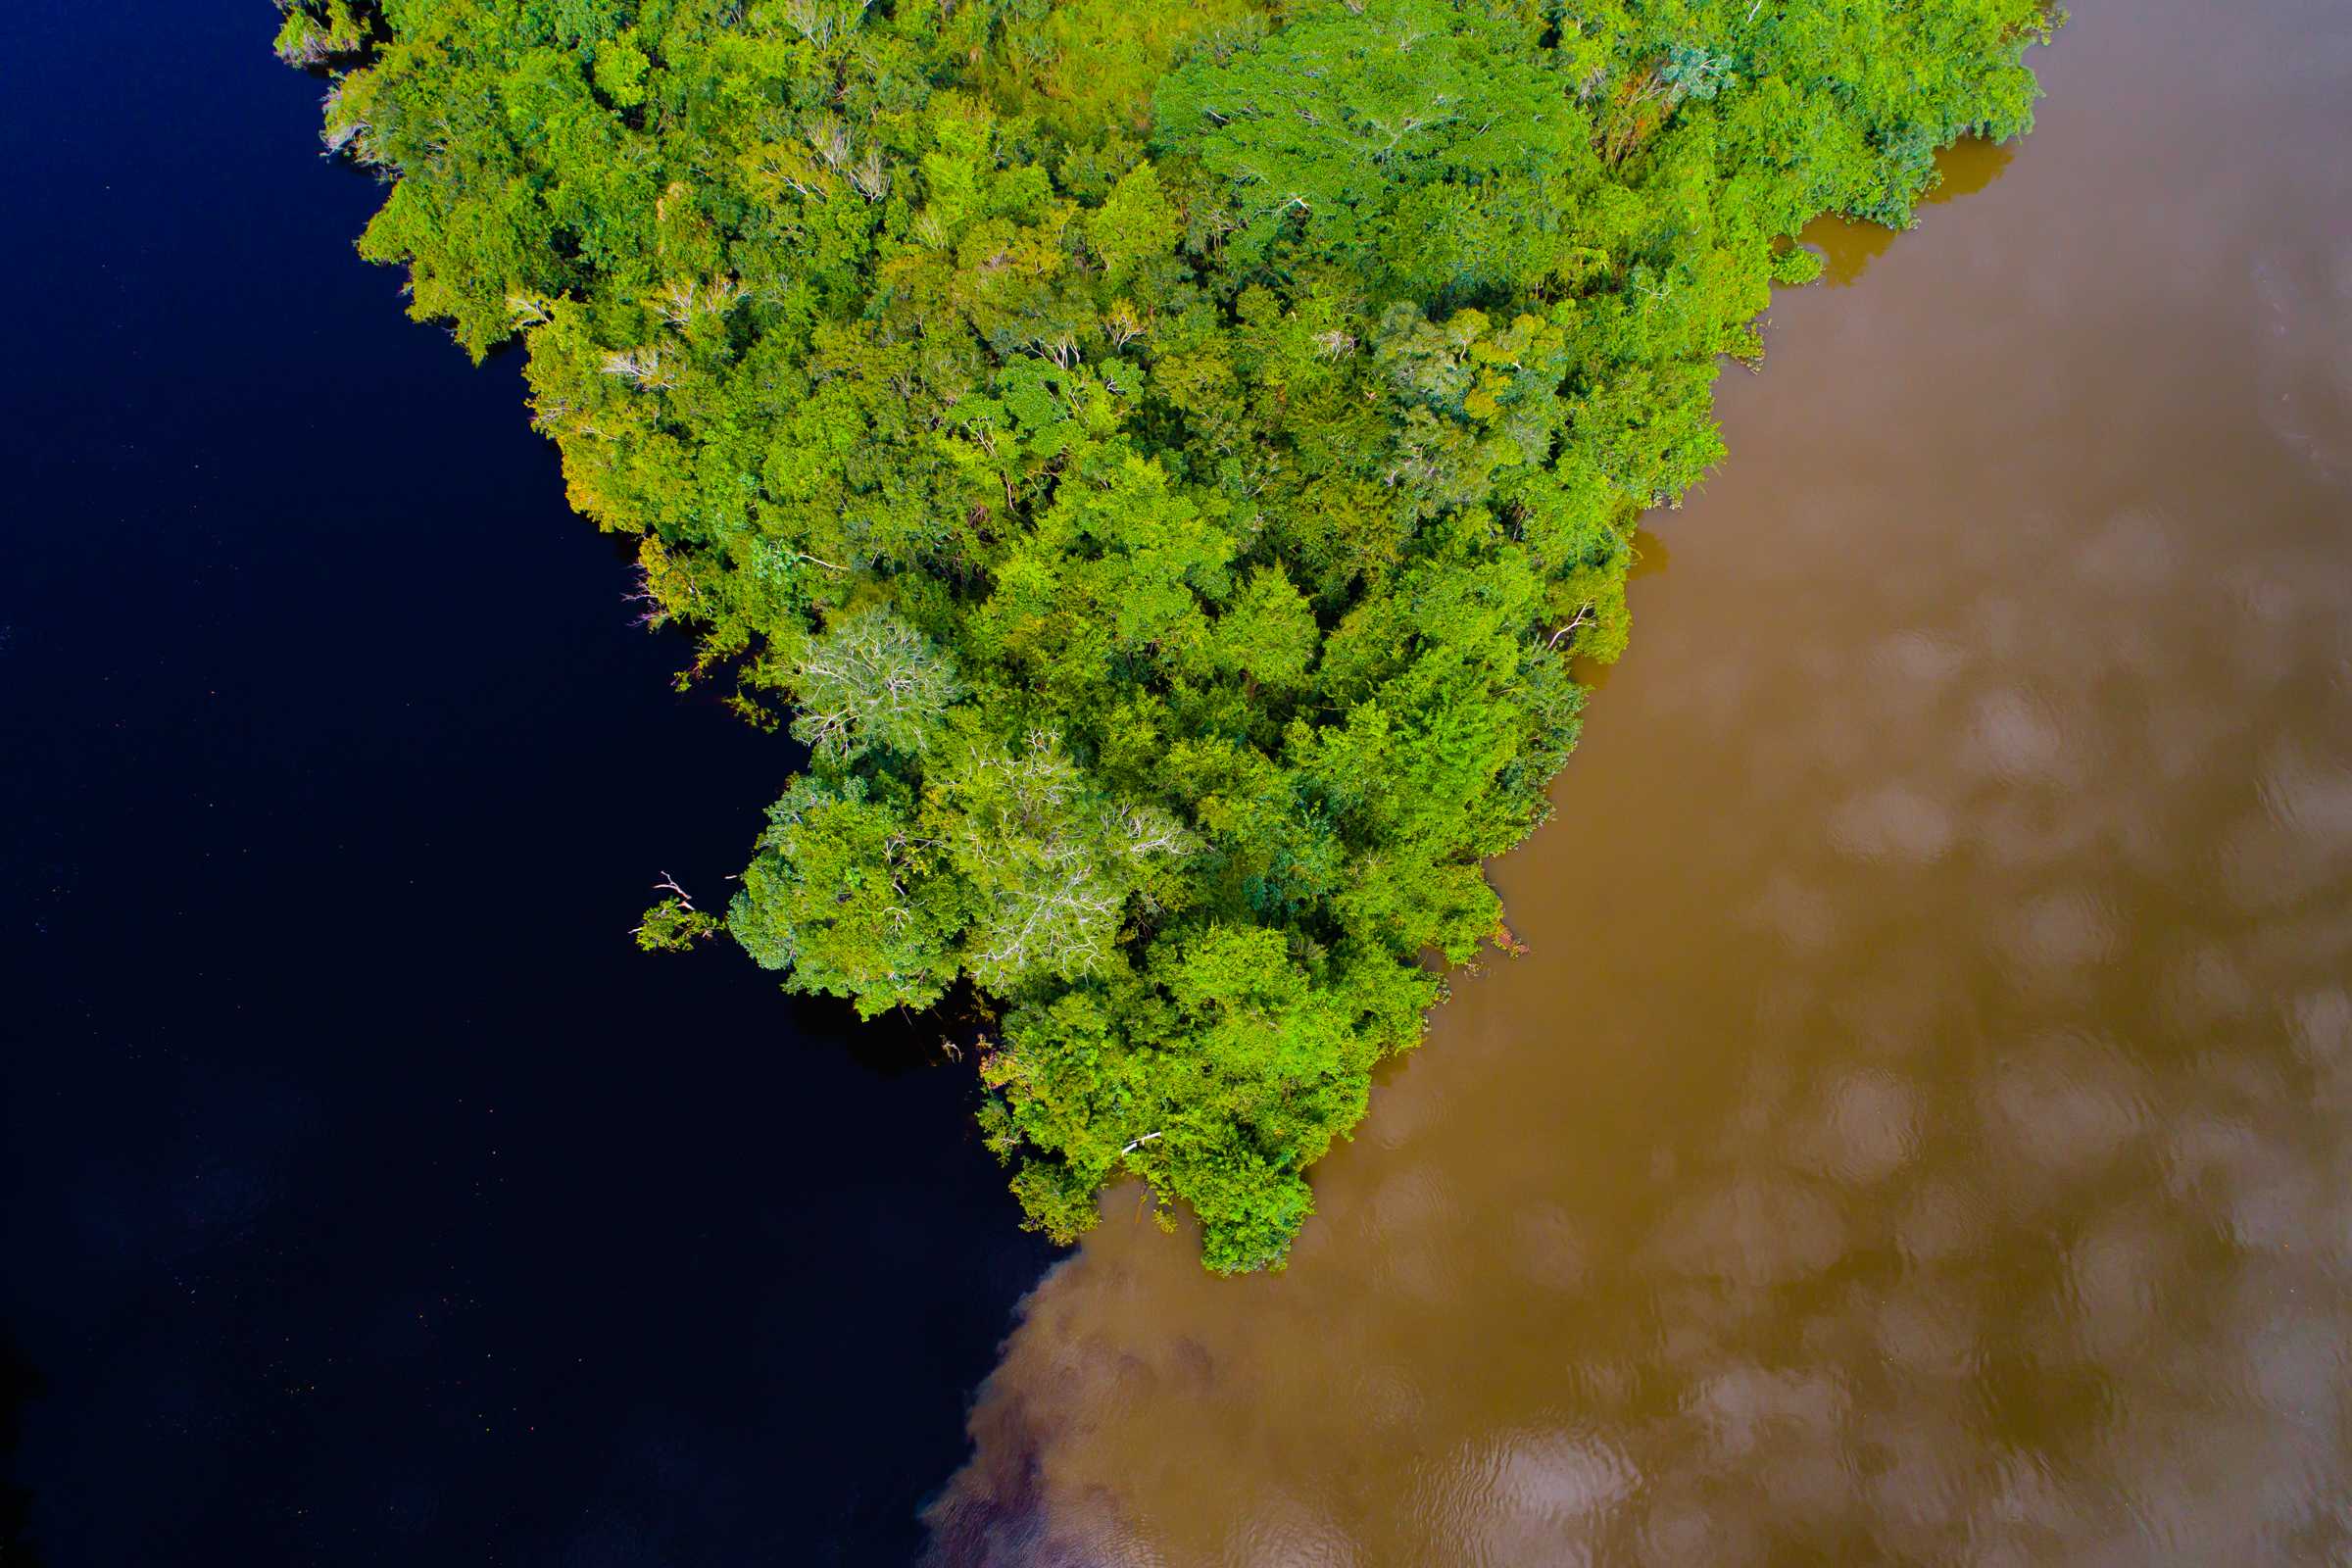 Justiça do Mato Grosso manda anular reserva ambiental na Amazônia após pedido de desmatadores